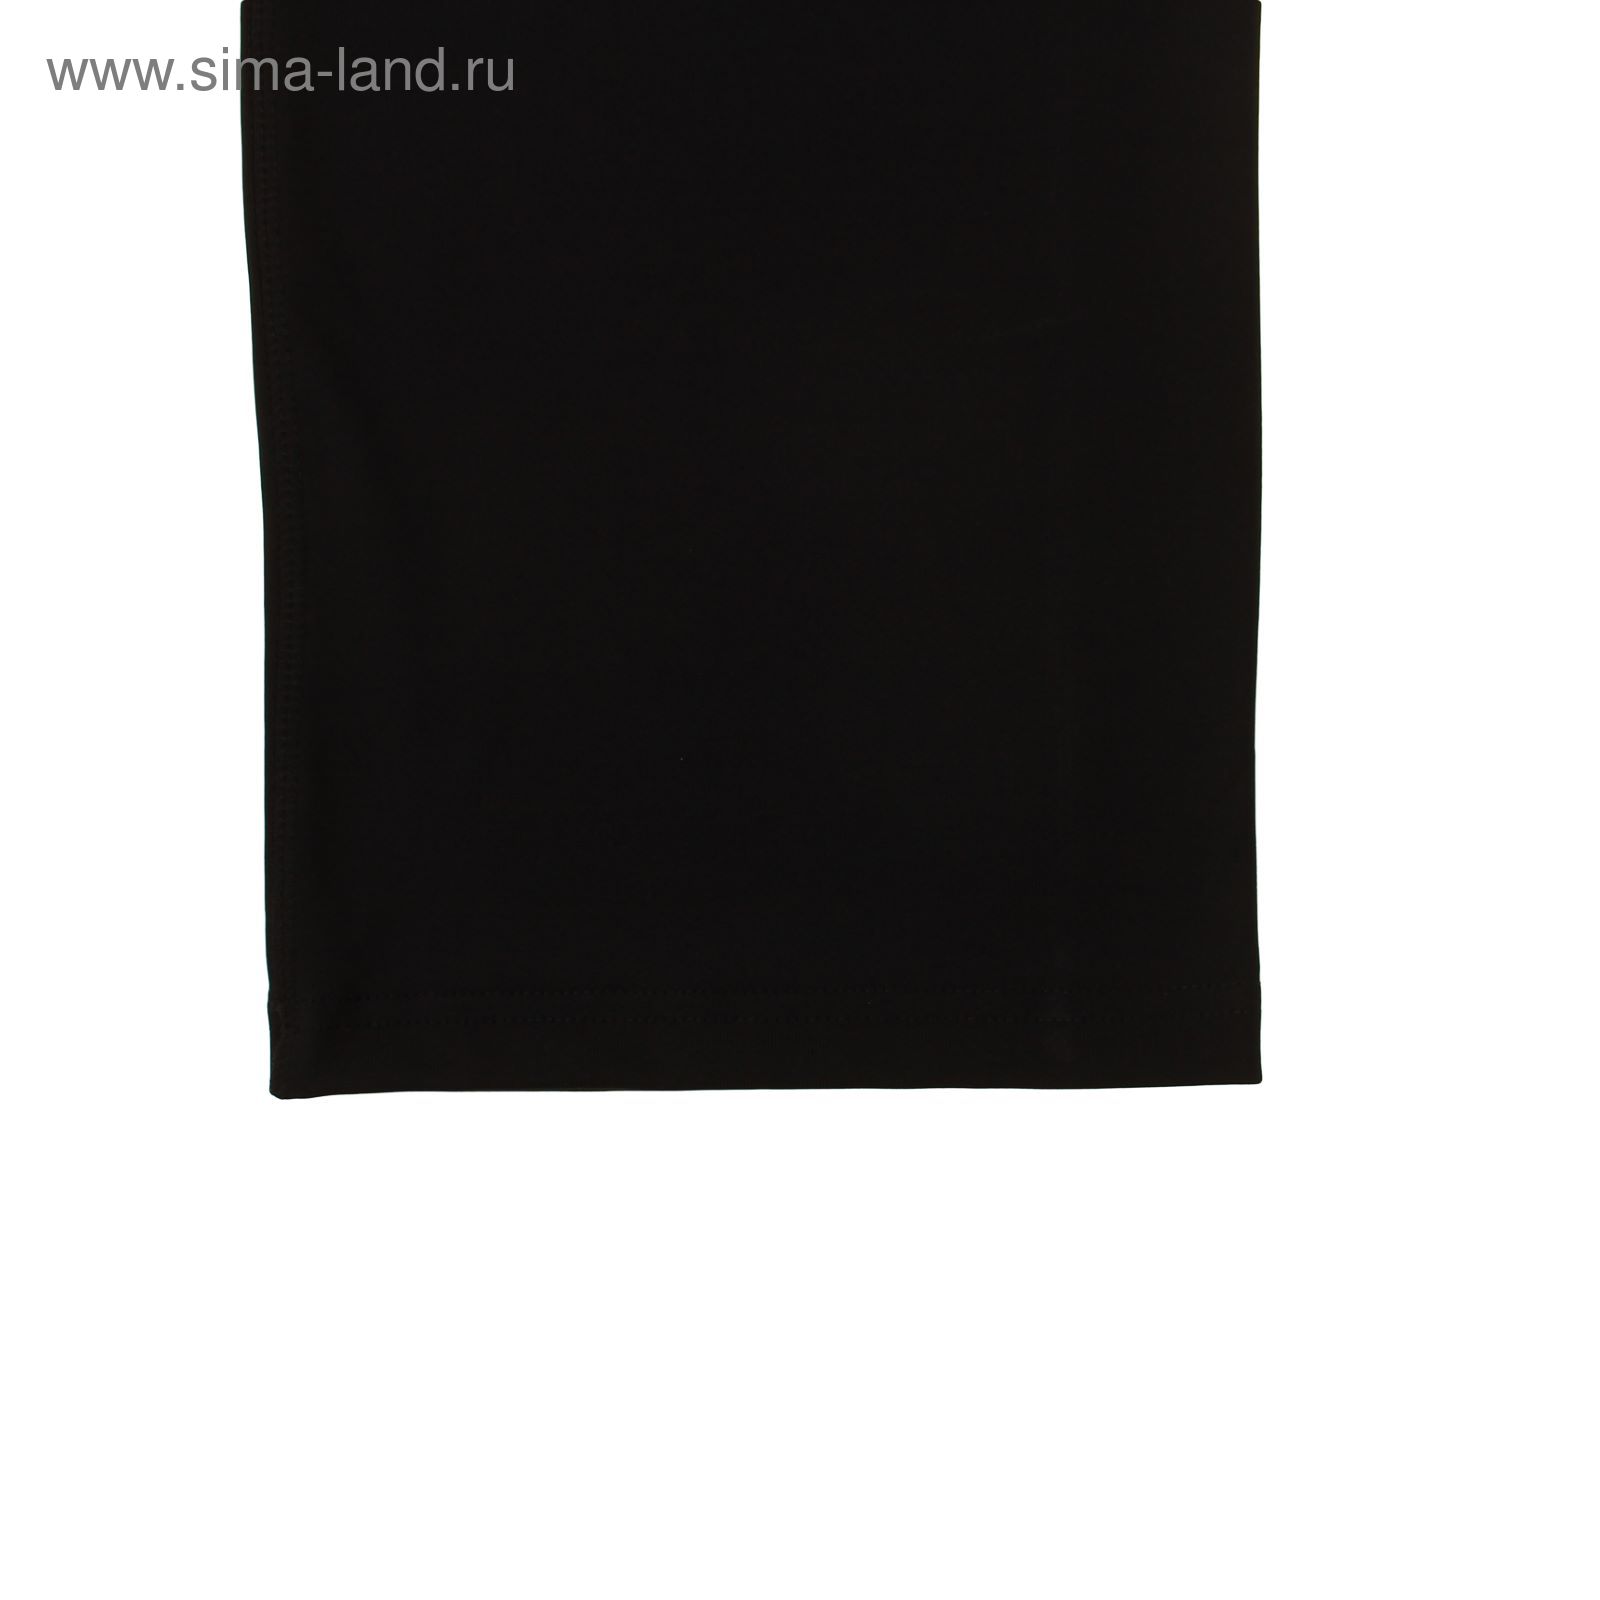 Брюки женские спортивные Р578391 цвет черный, рост 158-164 см, р-р 42 (90)